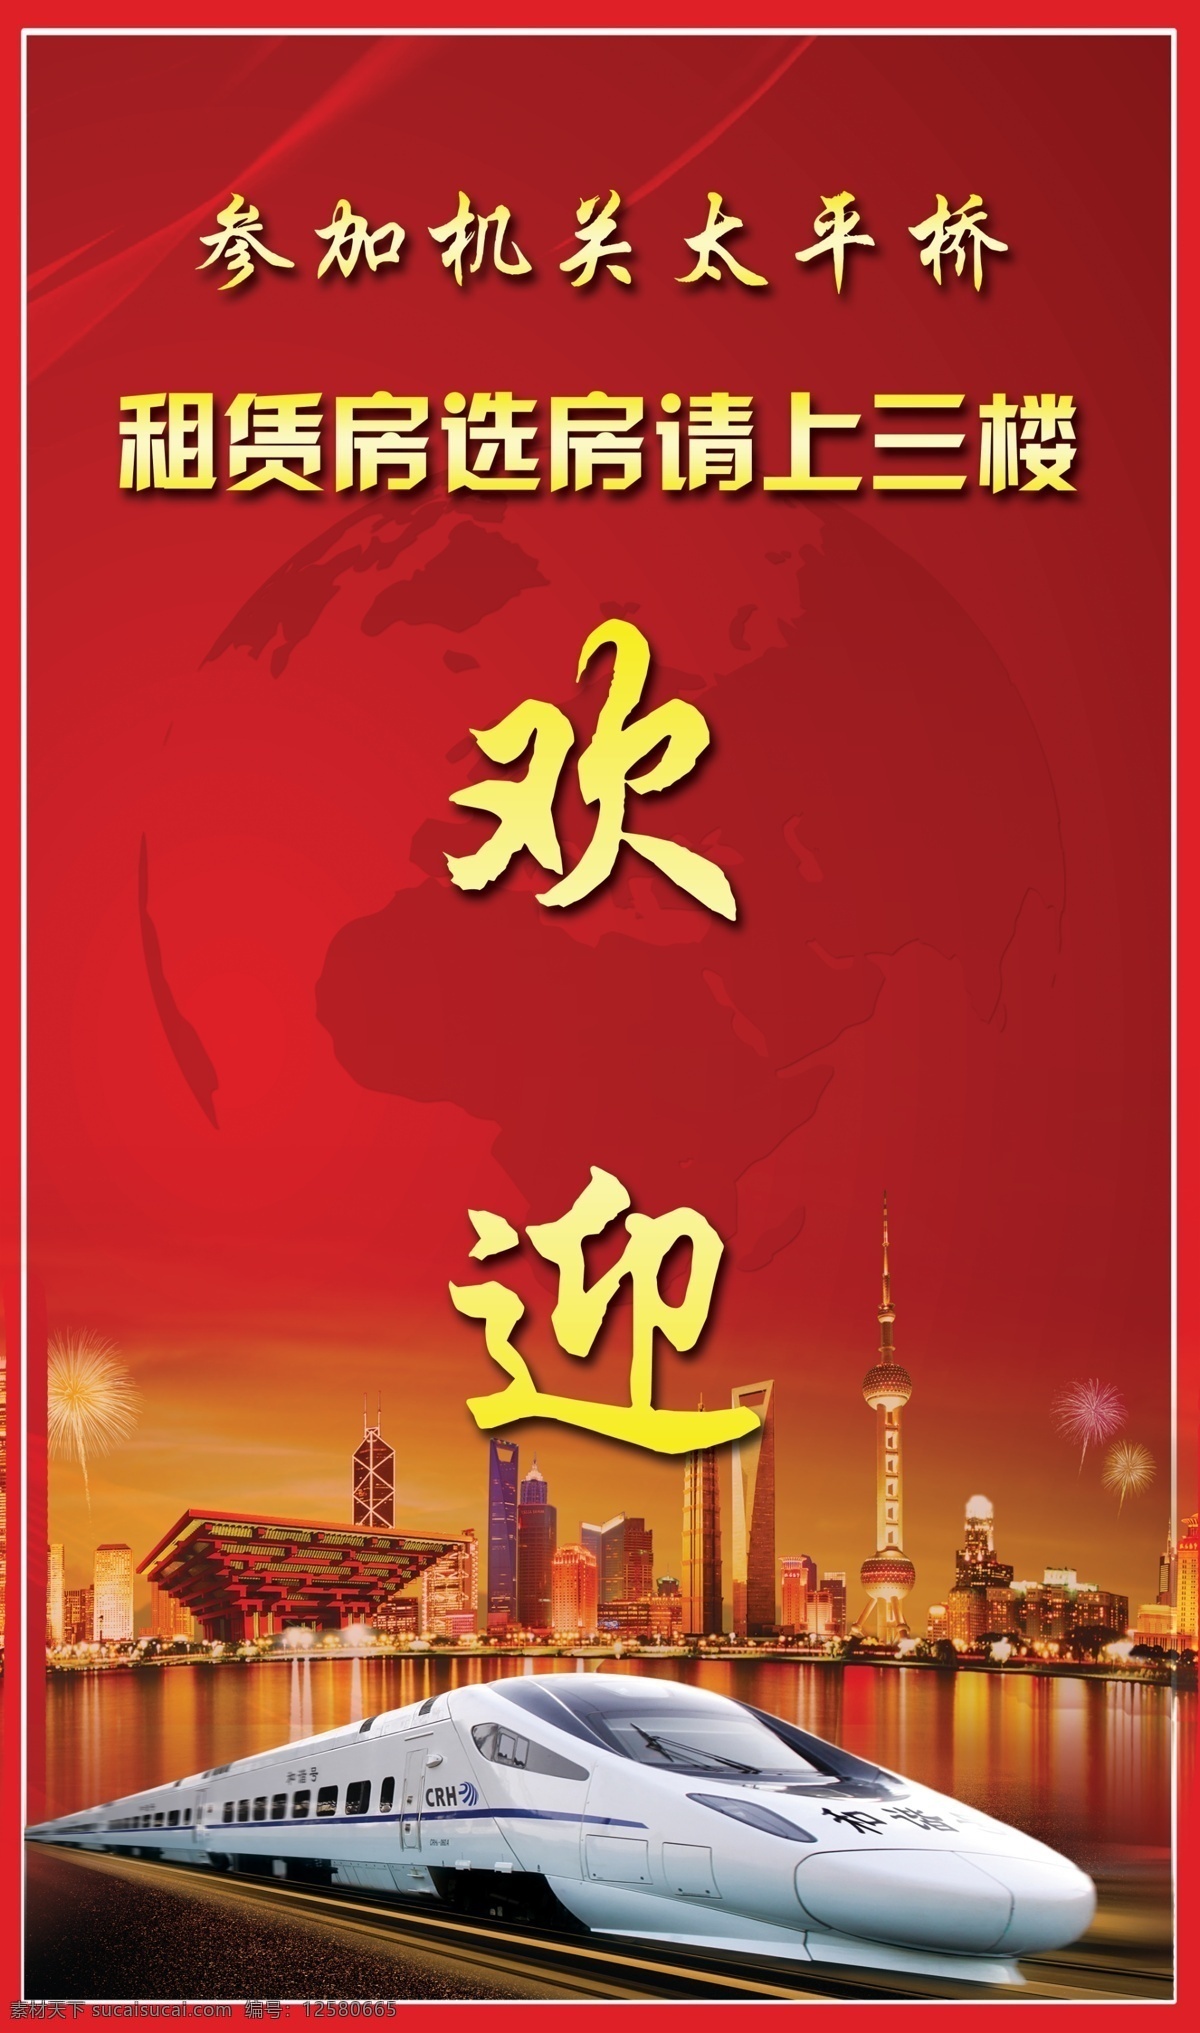 红色背景 欢迎牌 动车 上海剪影 东方明珠 地球剪影 展板 指引牌 上海素材 欢迎板 红色